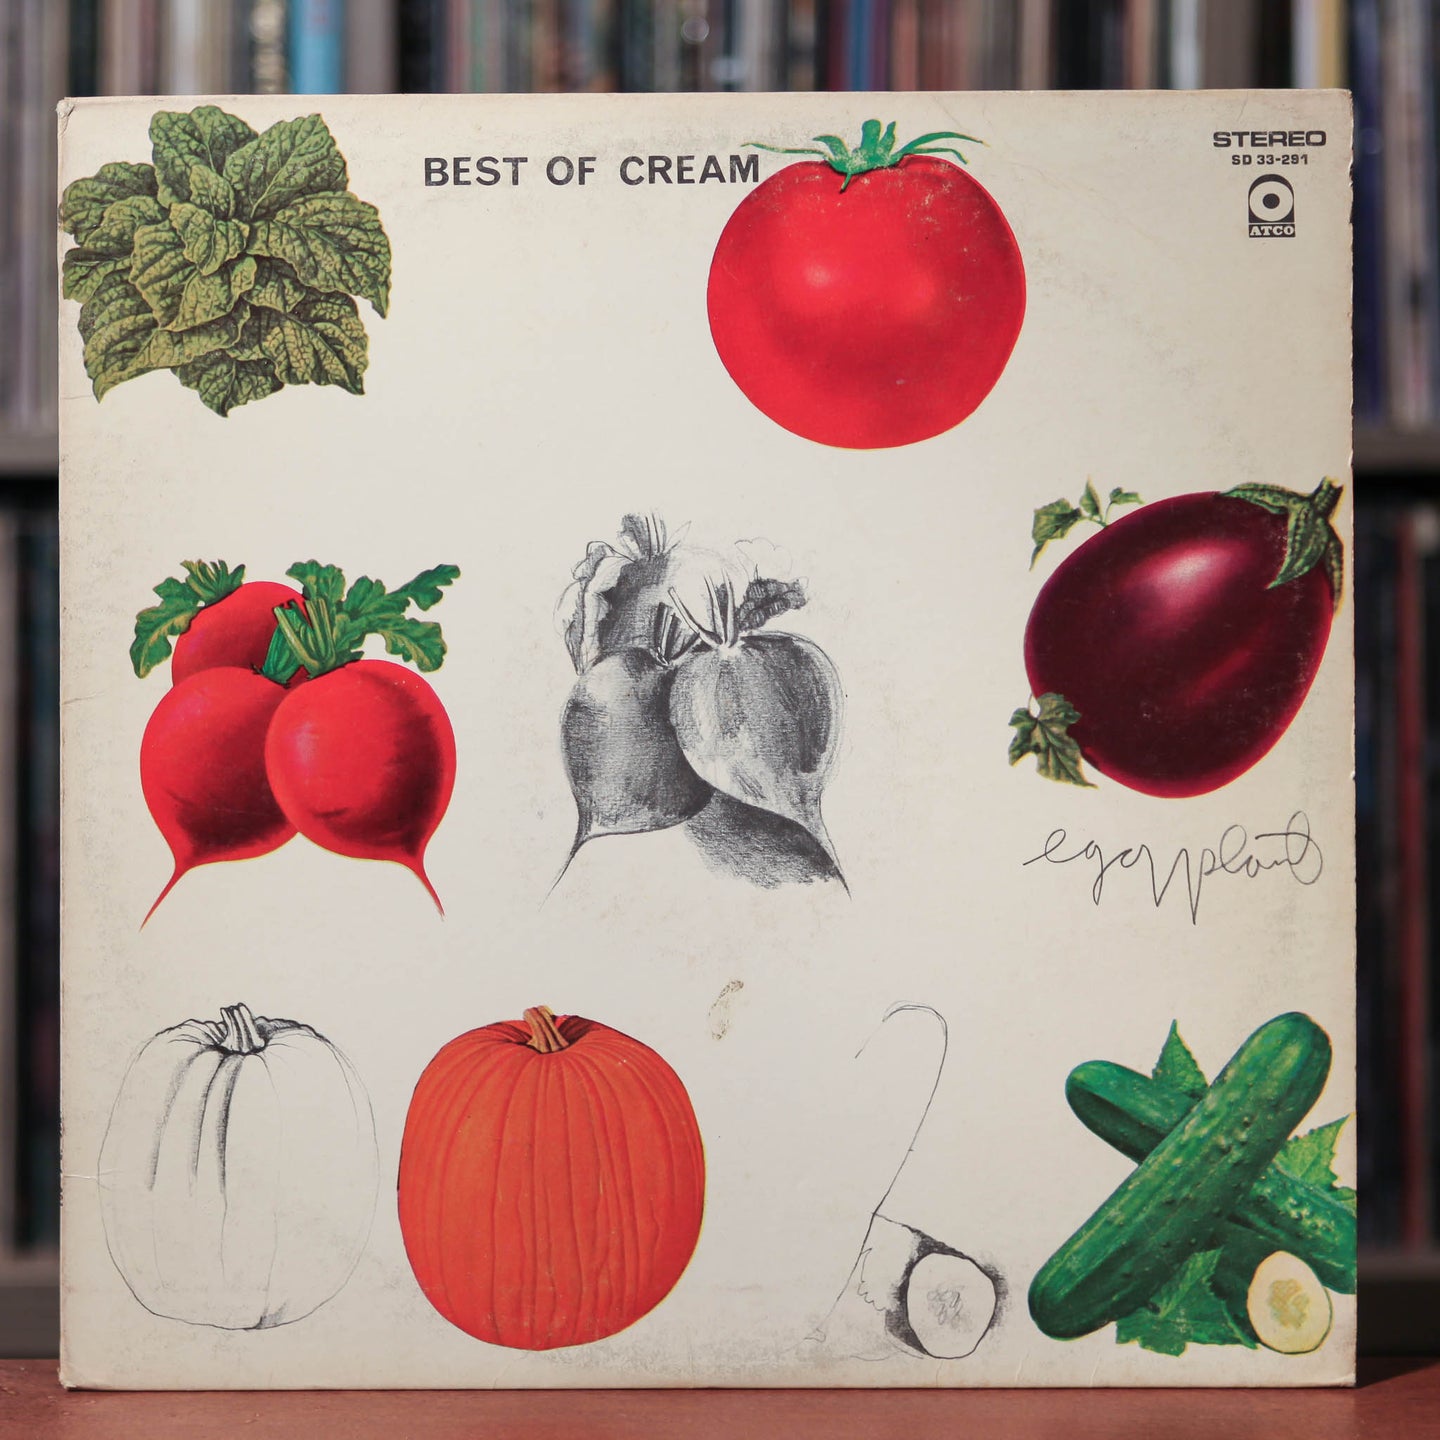 Cream - Best Of Cream - 1969 ATCO, VG/VG